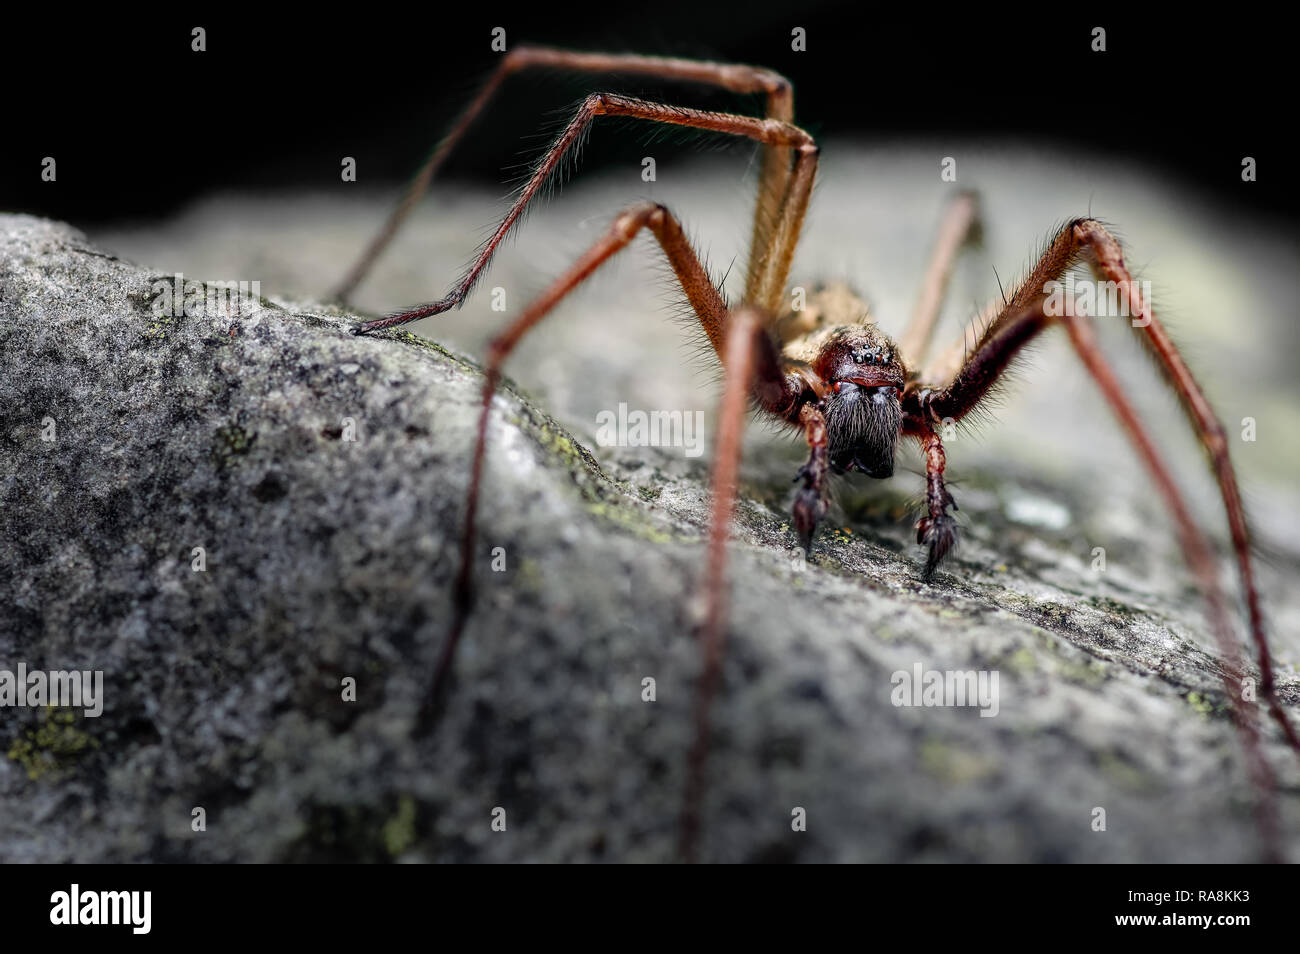 Dies ist ein männlicher Riese Haus Spider Tegenaria atrica Eratigena Topik genannt. Typisch ist das Männchen zu sehen, wie der weibliche verborgen bleibt. Stockfoto